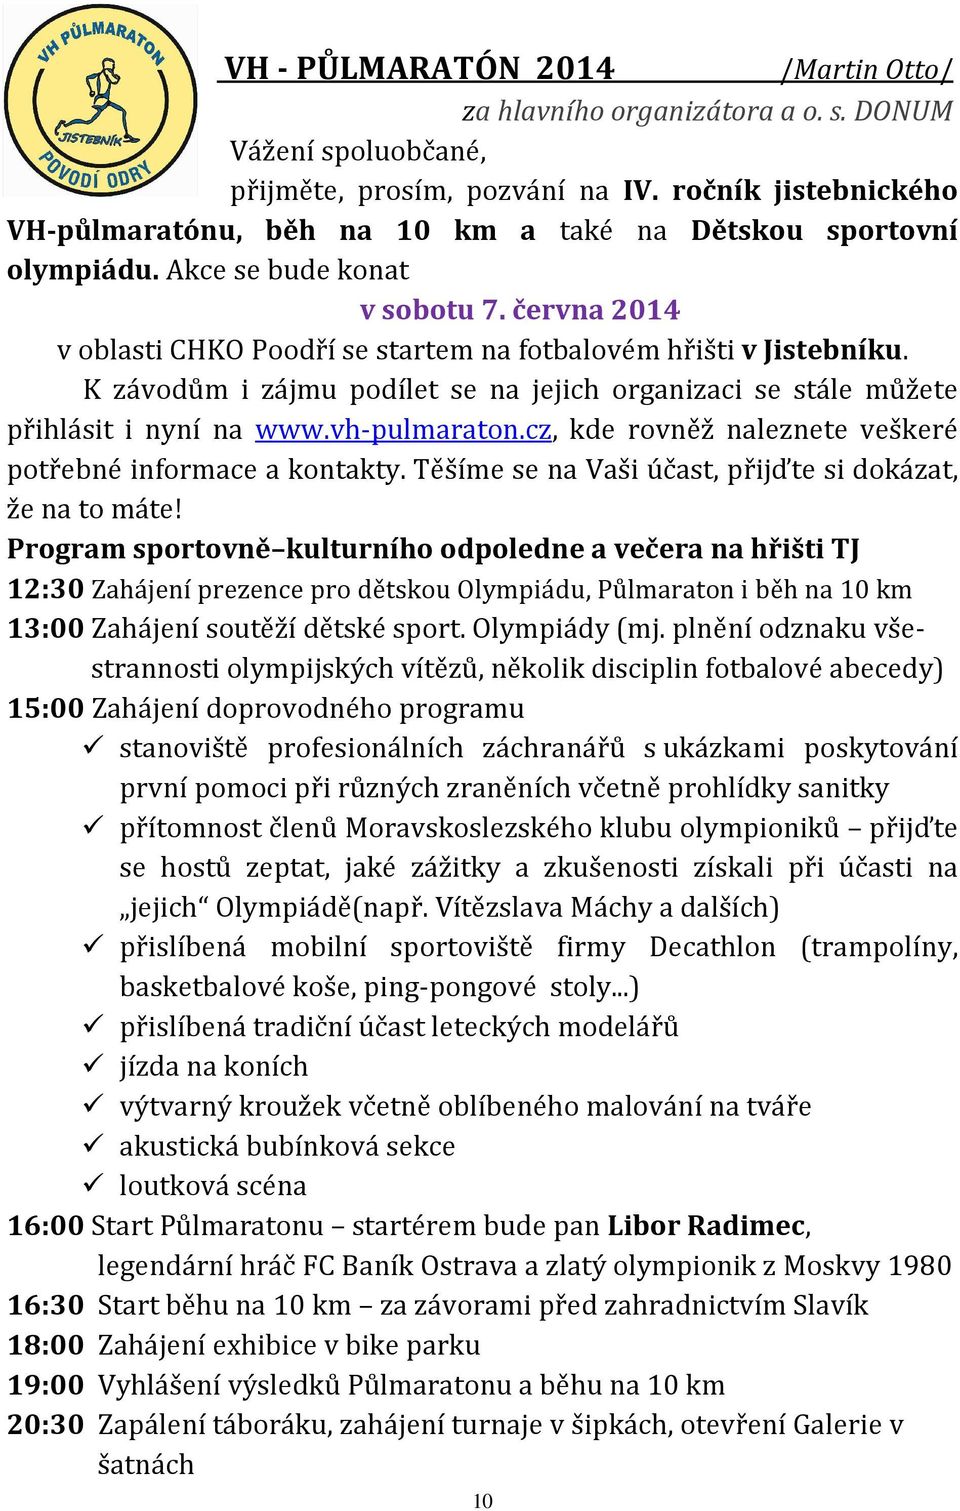 K závodům i zájmu podílet se na jejich organizaci se stále můžete přihlásit i nyní na www.vh-pulmaraton.cz, kde rovněž naleznete veškeré potřebné informace a kontakty.